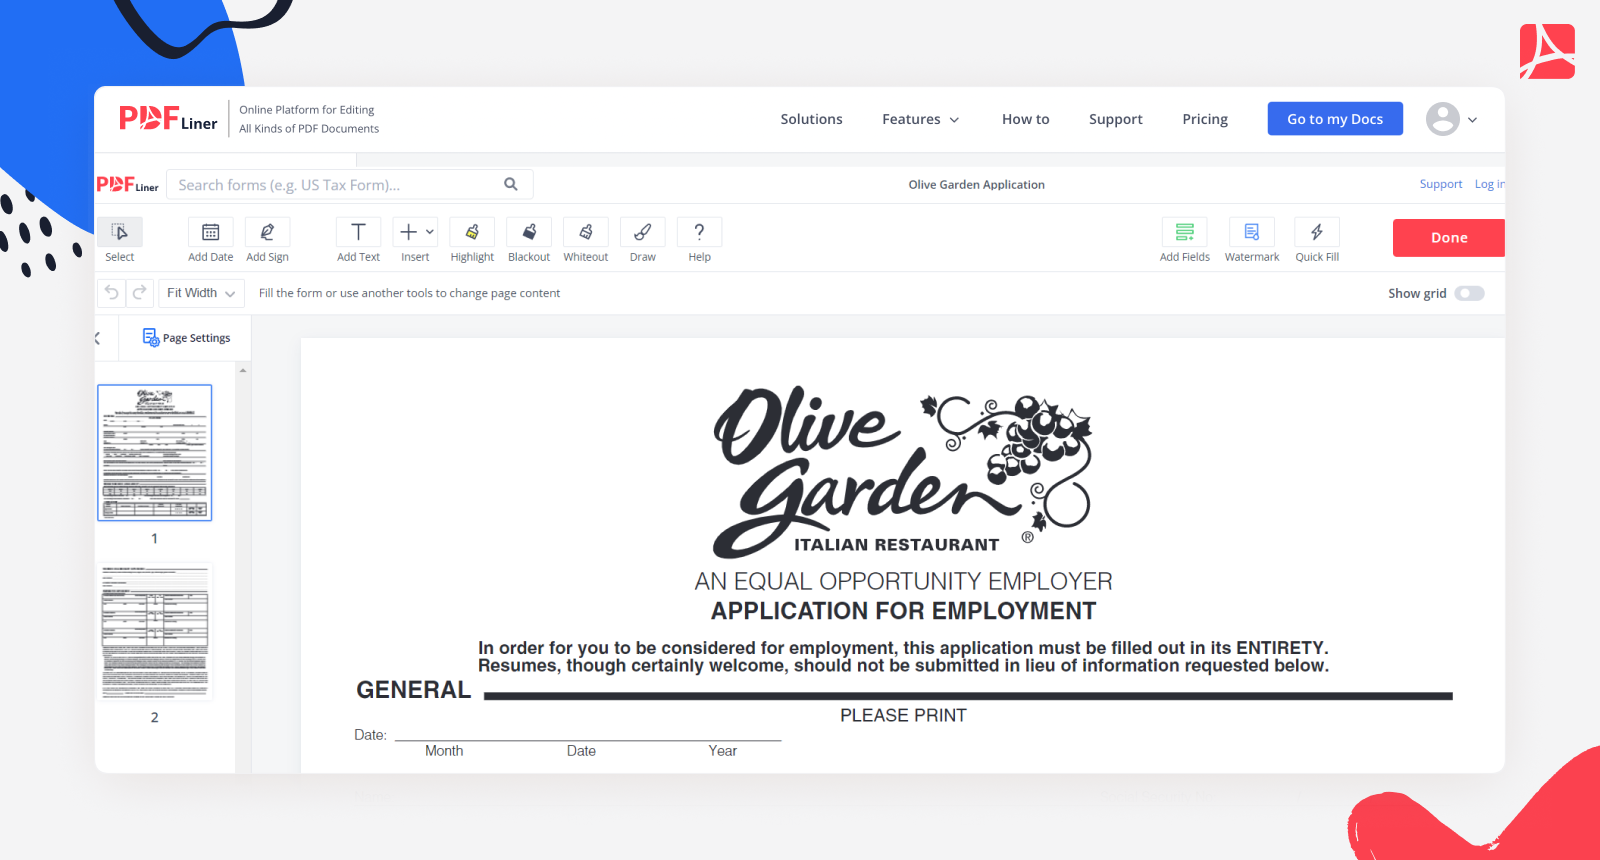 Olive Garden Application on PDFLiner